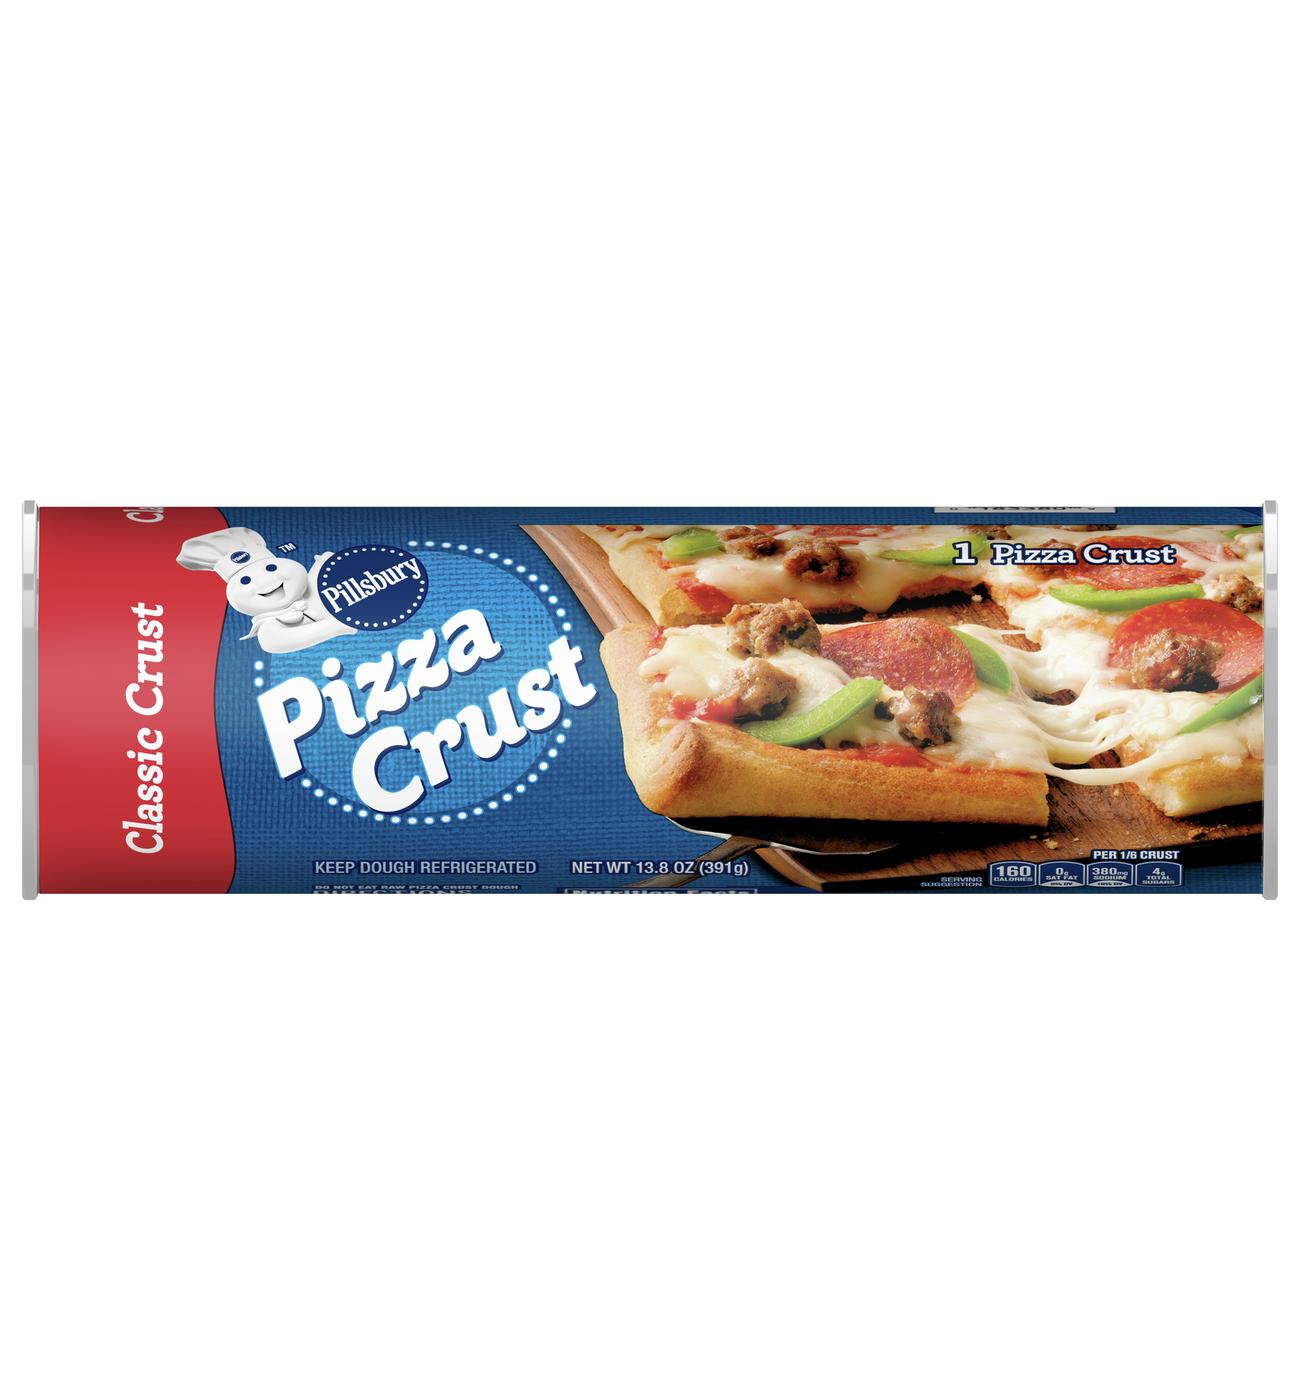 Pillsbury Classic Pizza Crust; image 1 of 2